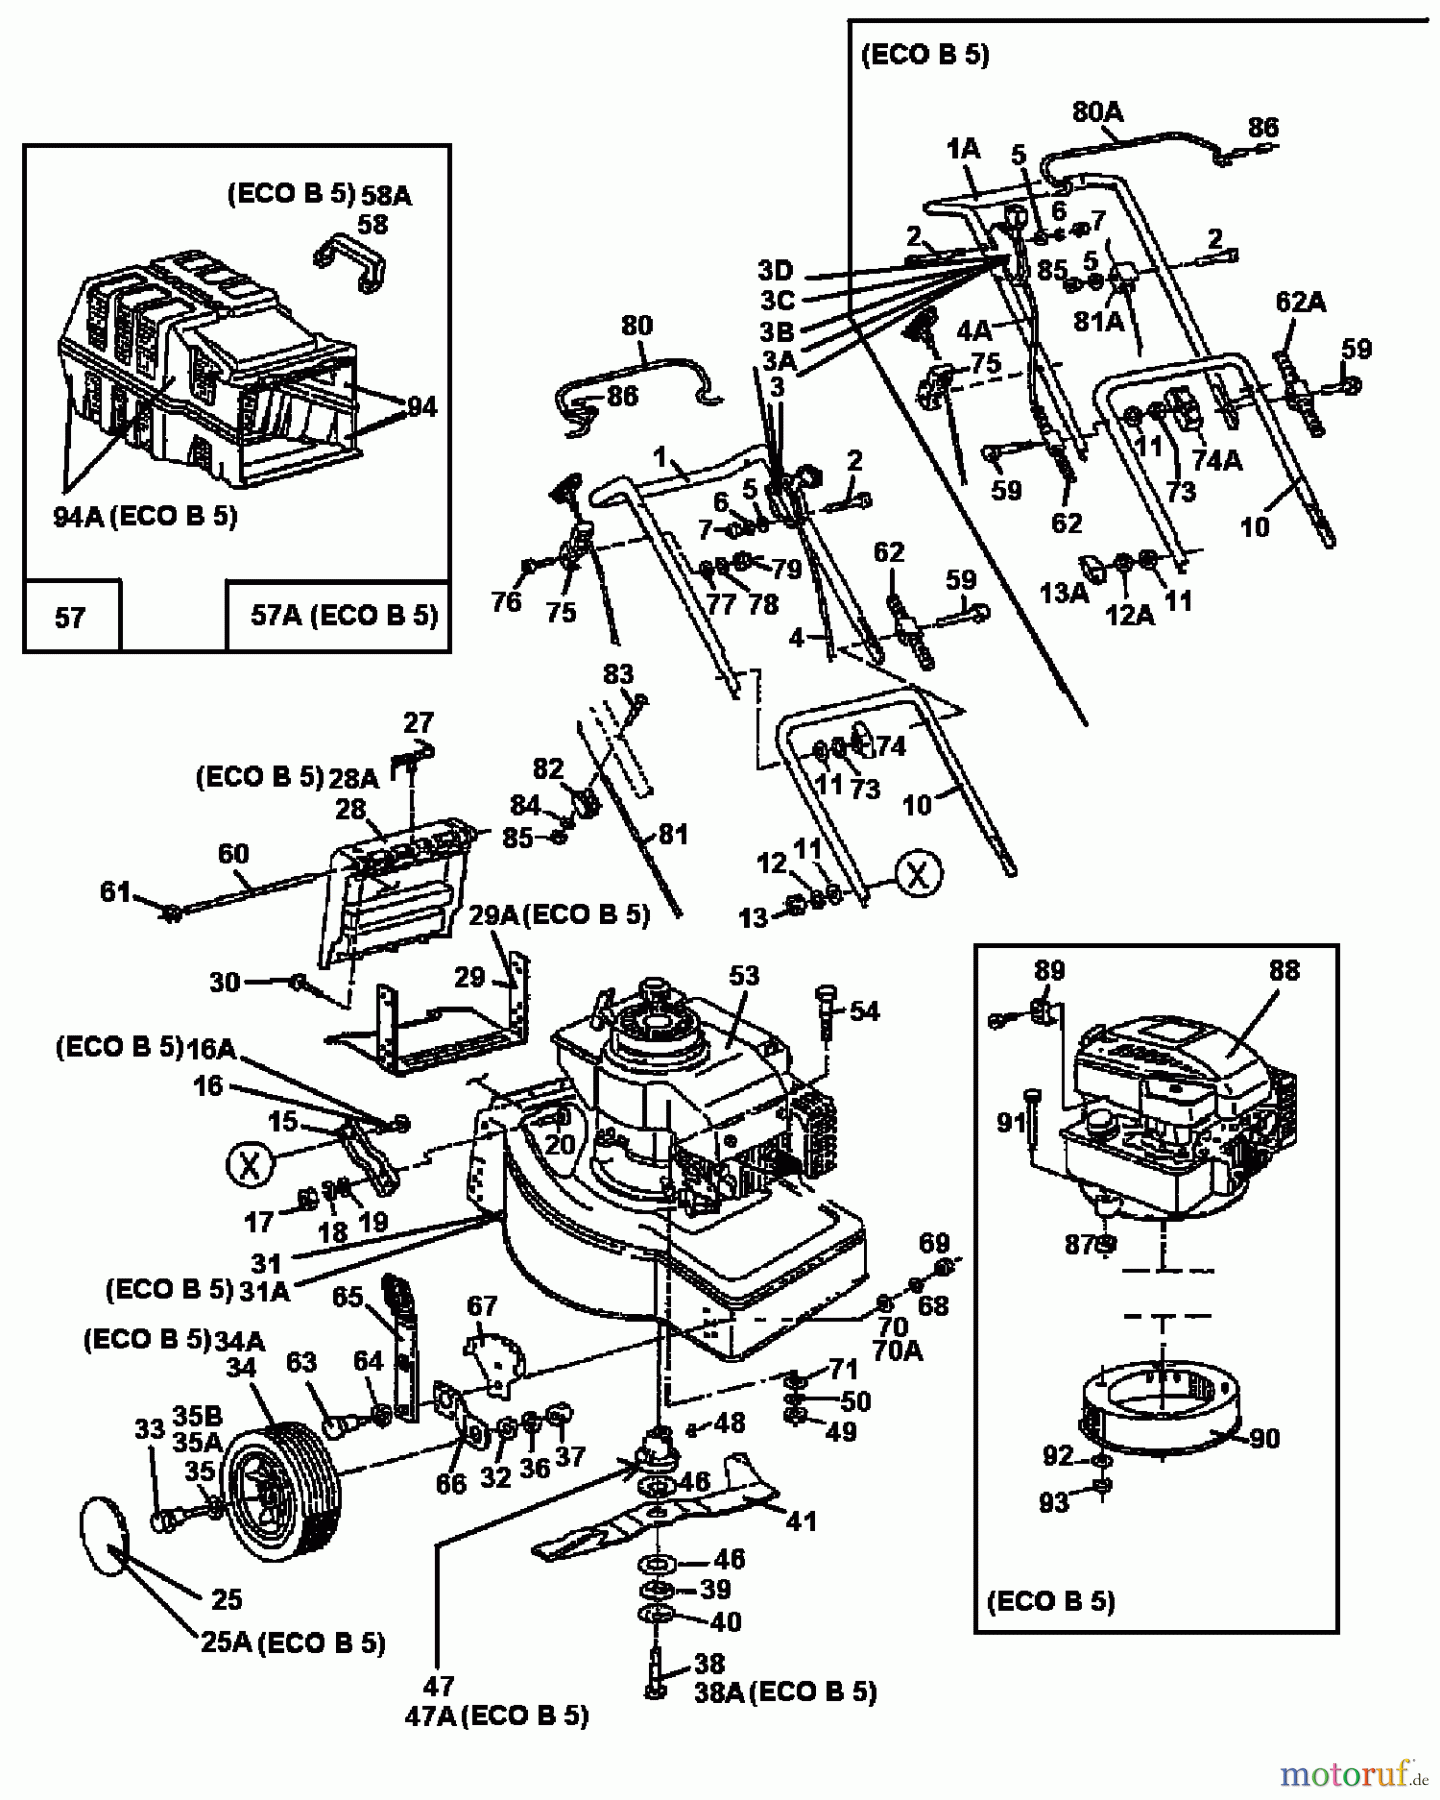  Gutbrod Tondeuse thermique ECO B 5 04042.06  (1997) Machine de base